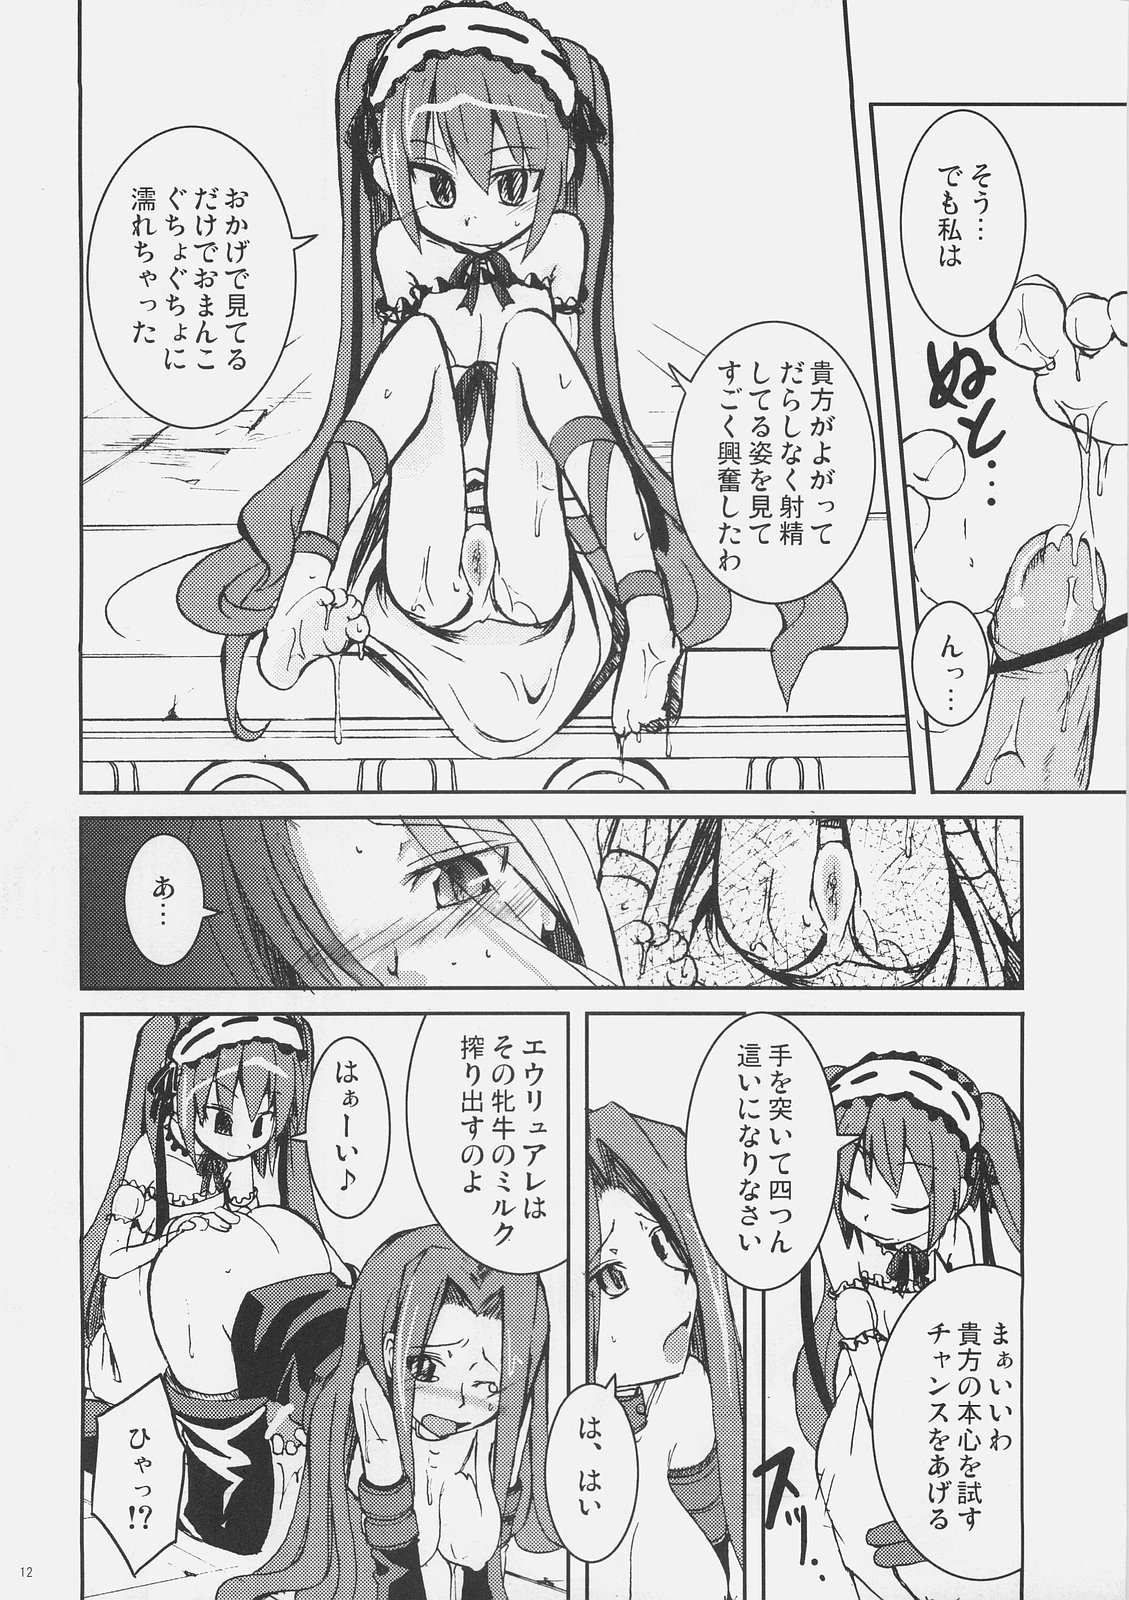 (SC32) [MASULAO MAXIMUM (Kazekawa Nagi)] Candy cutie sadist (Fate/stay night) page 11 full